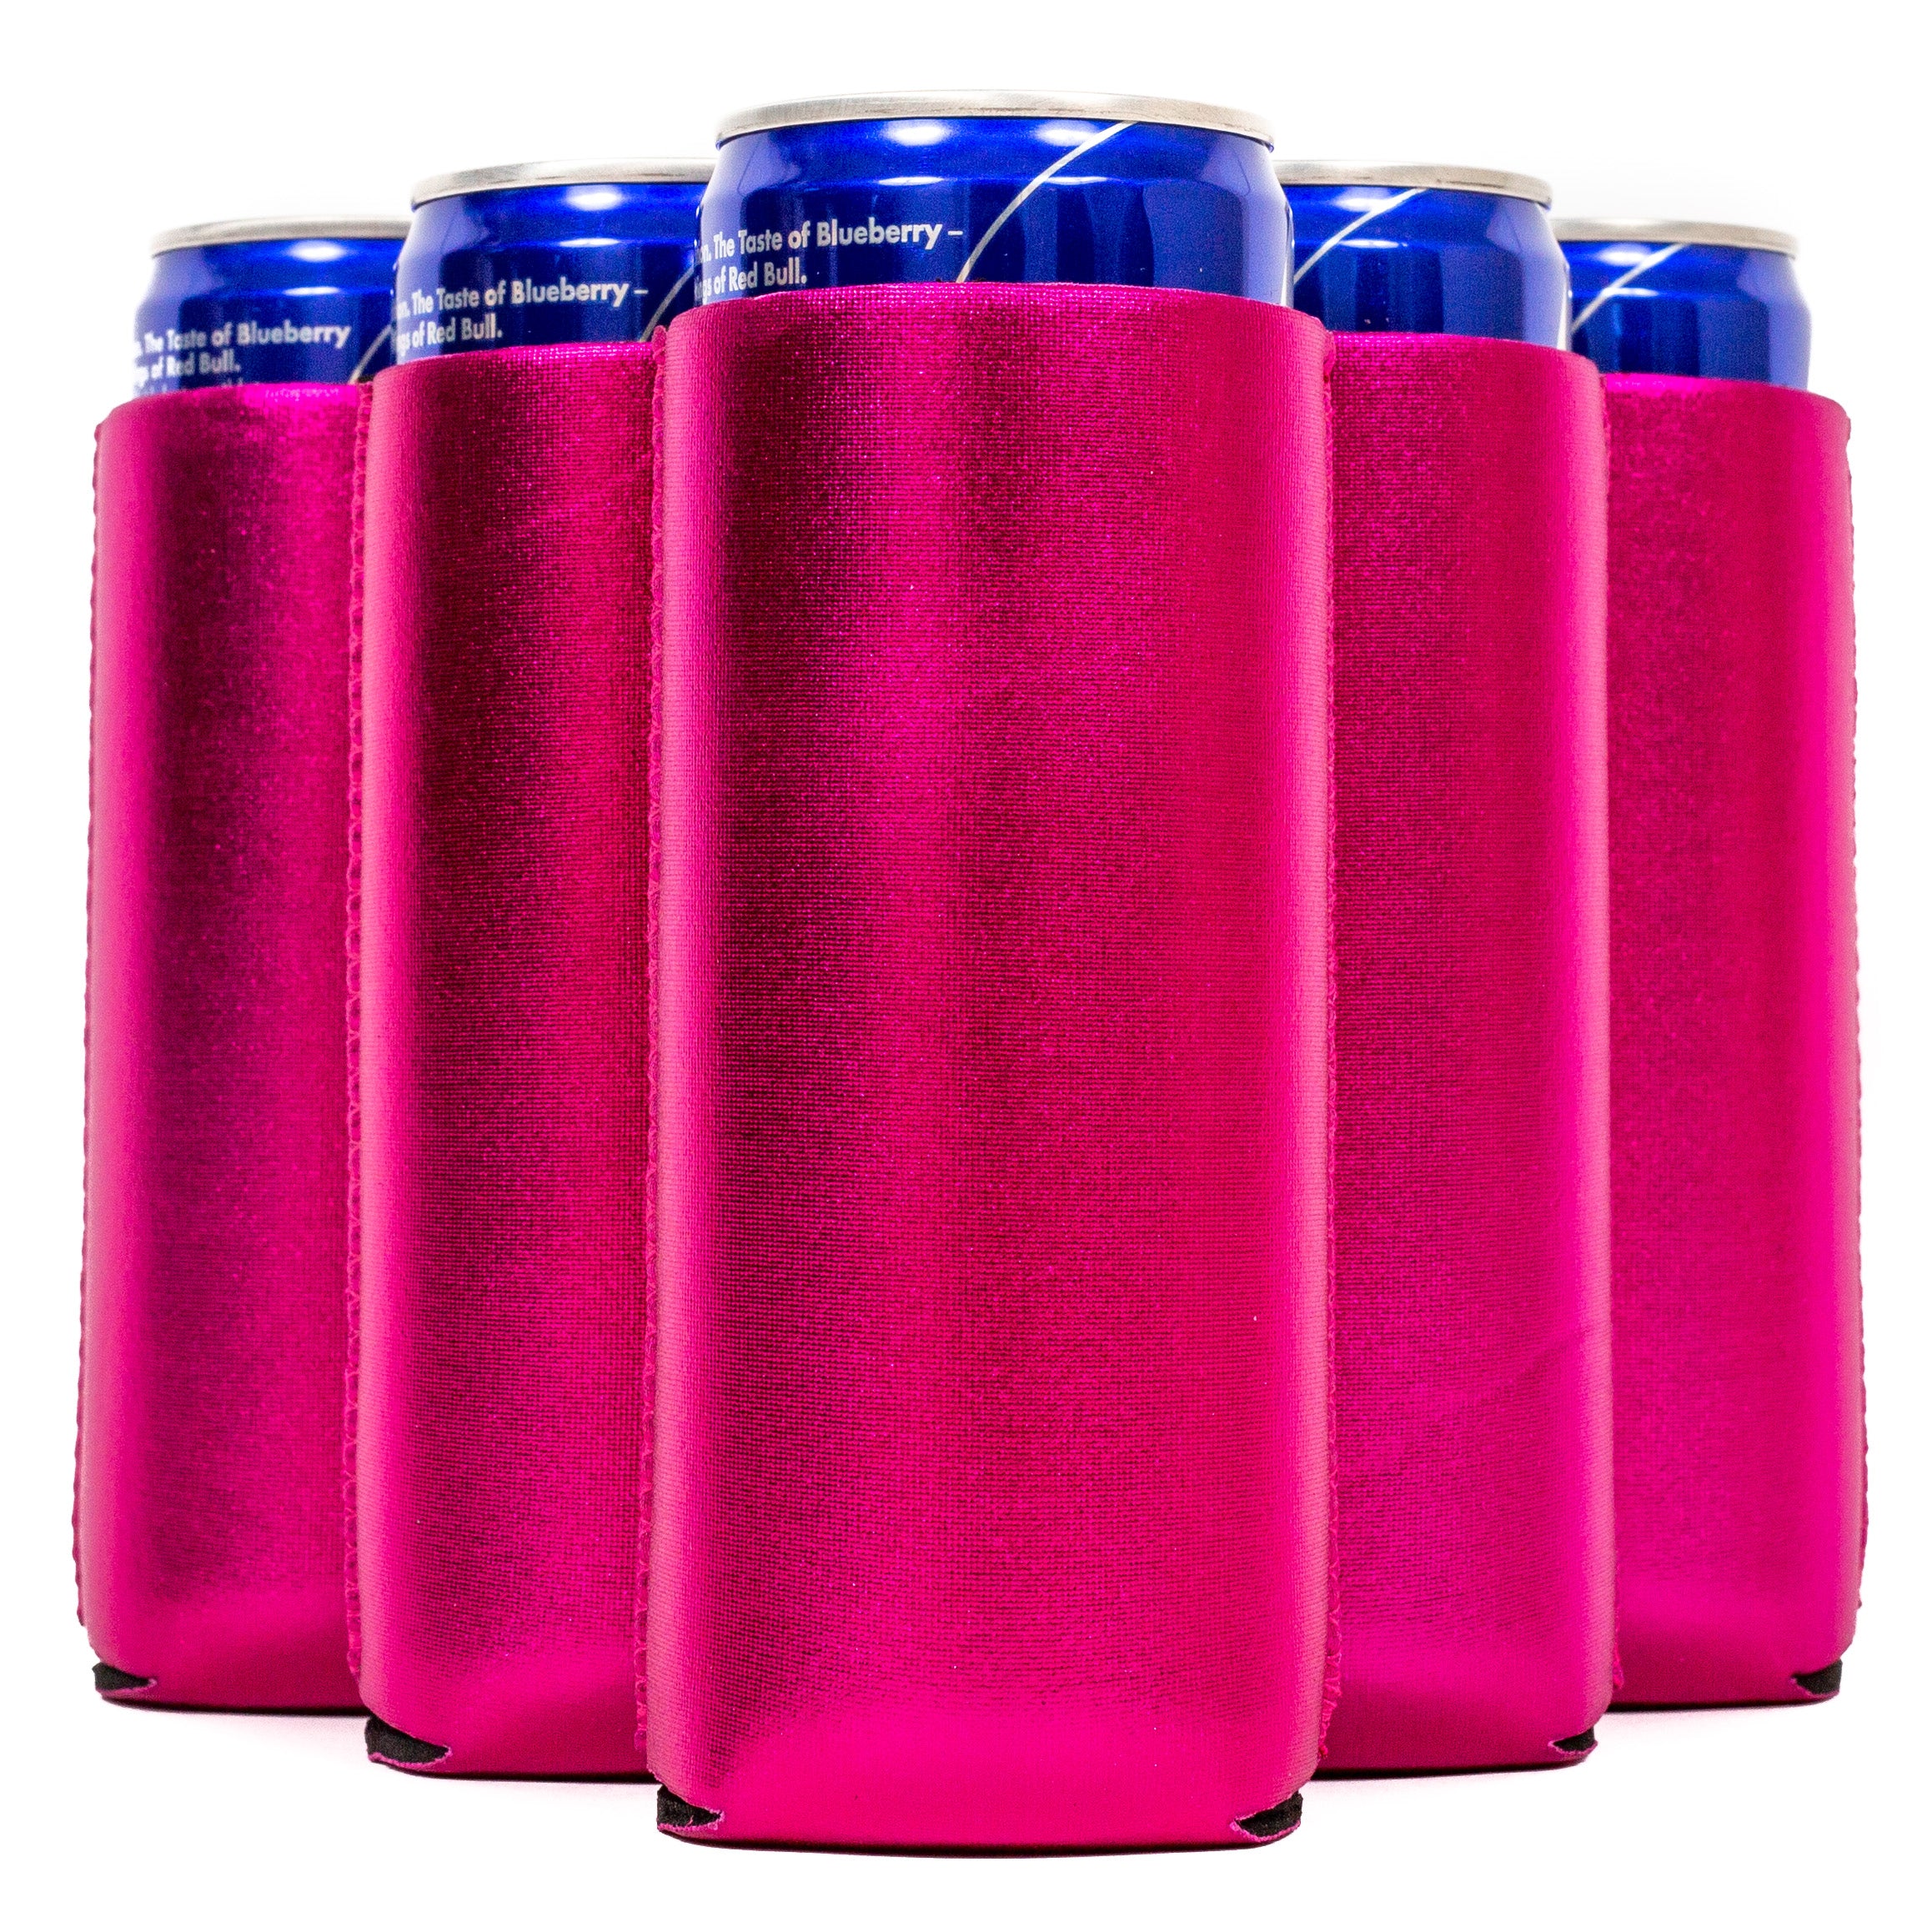 Metallic Slim Blank Neoprene Can Cooler Slim Skinny Coolie - 1,6,12,25,50,100 50 / Metallic Hot Pink